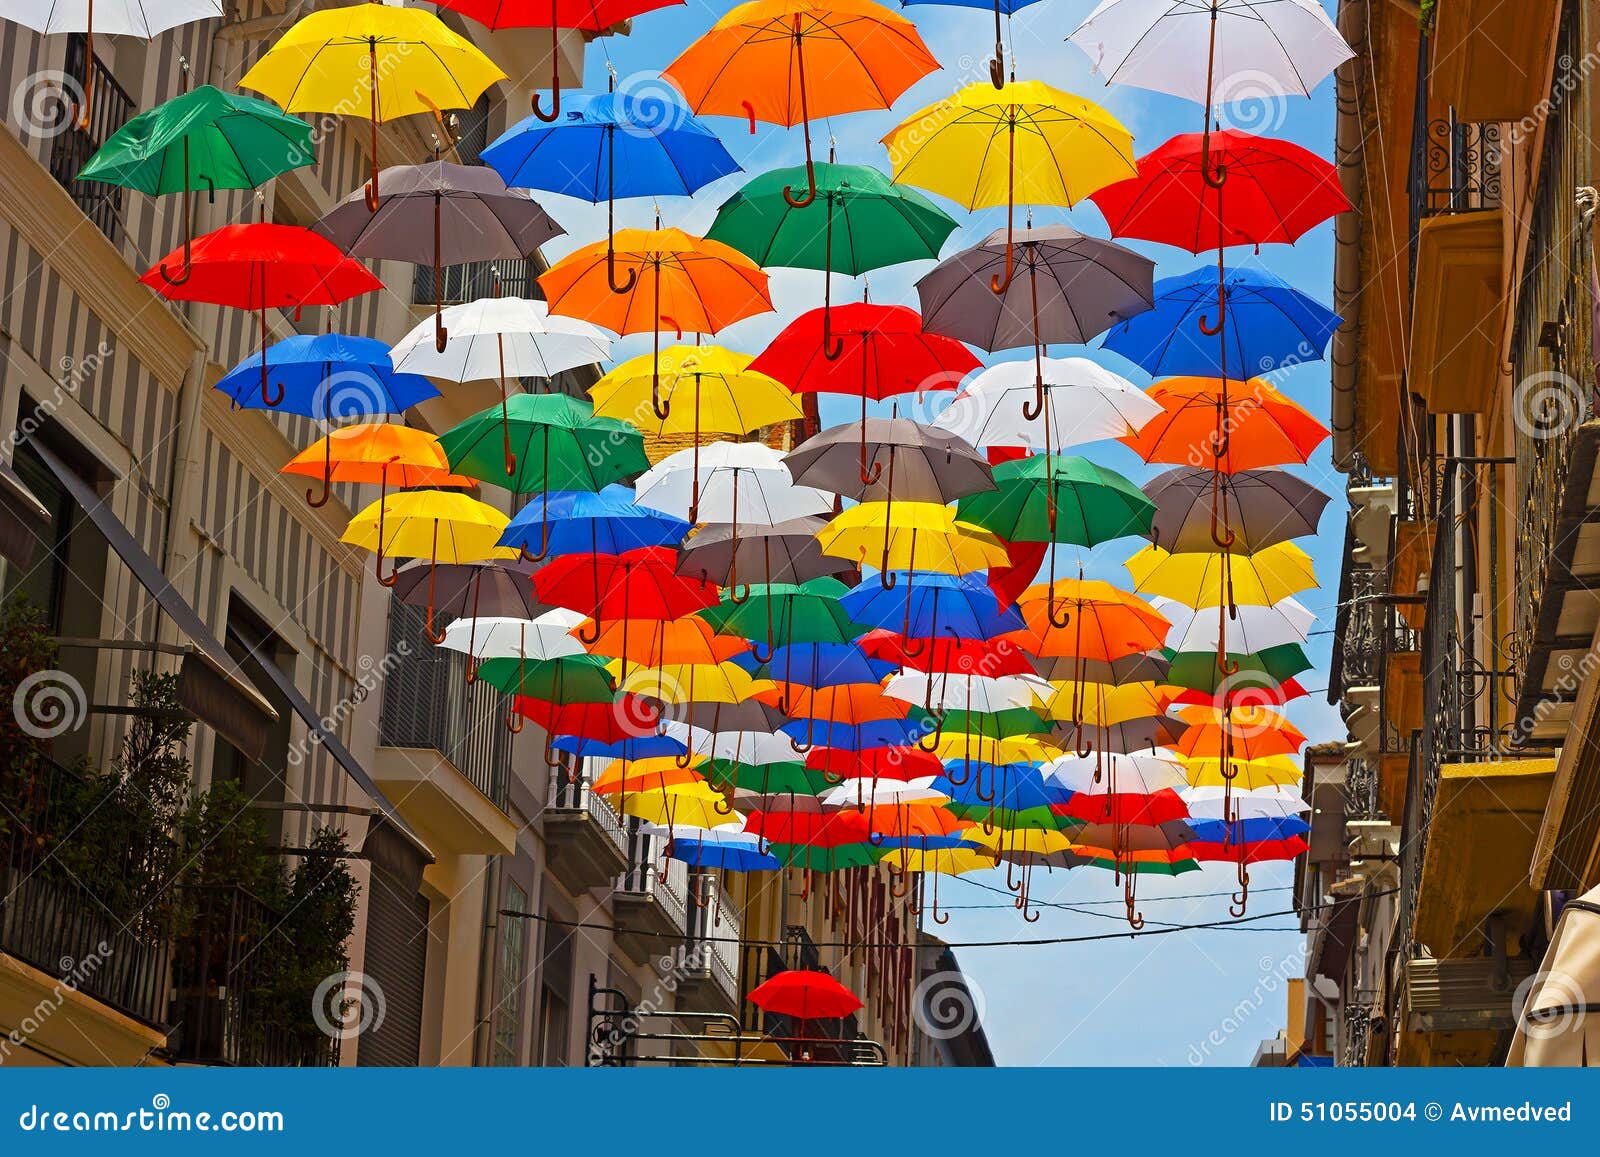 Kleurrijke Die Paraplu's Op De Straat in Spaanse Stad Geïnstalleerd Stock Foto - Image of winkelen, hulp: 51055004